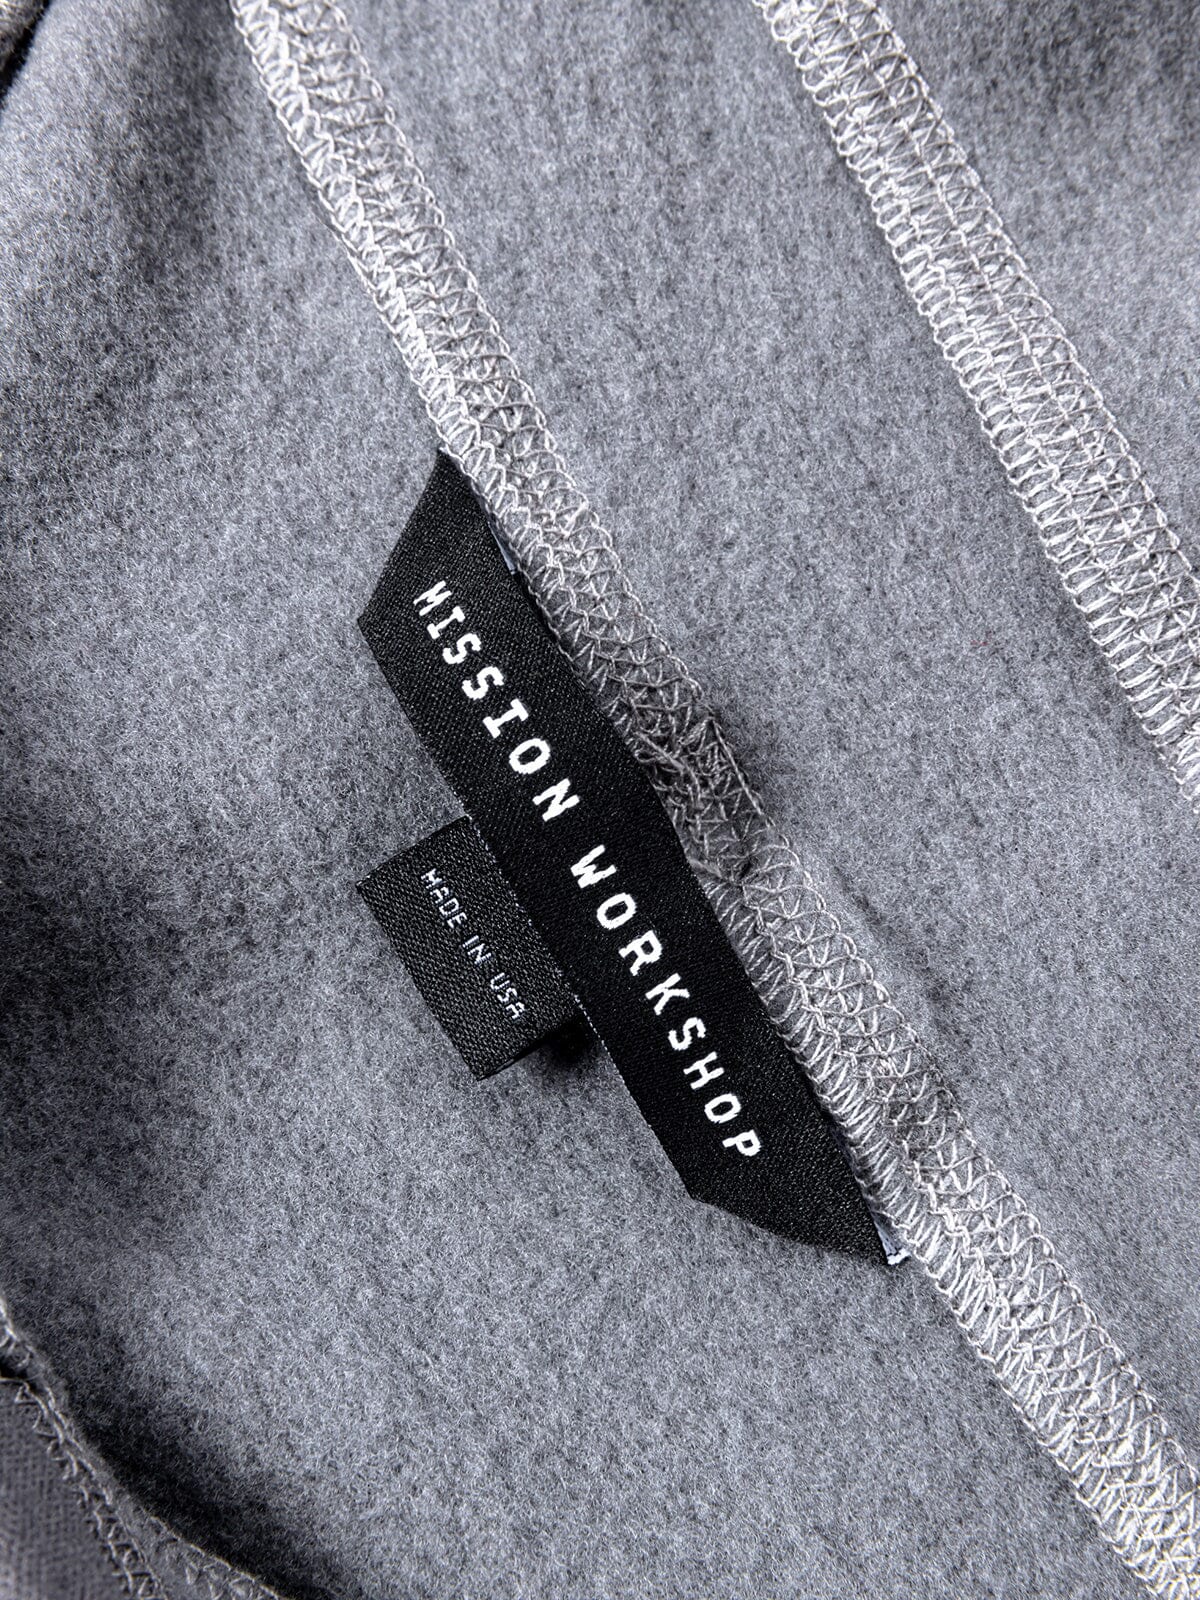 Faeröer : Power Wool van Mission Workshop - weerbestendige tassen & technische kleding - San Francisco & Los Angeles - gebouwd om te verdragen - voor altijd gegarandeerd